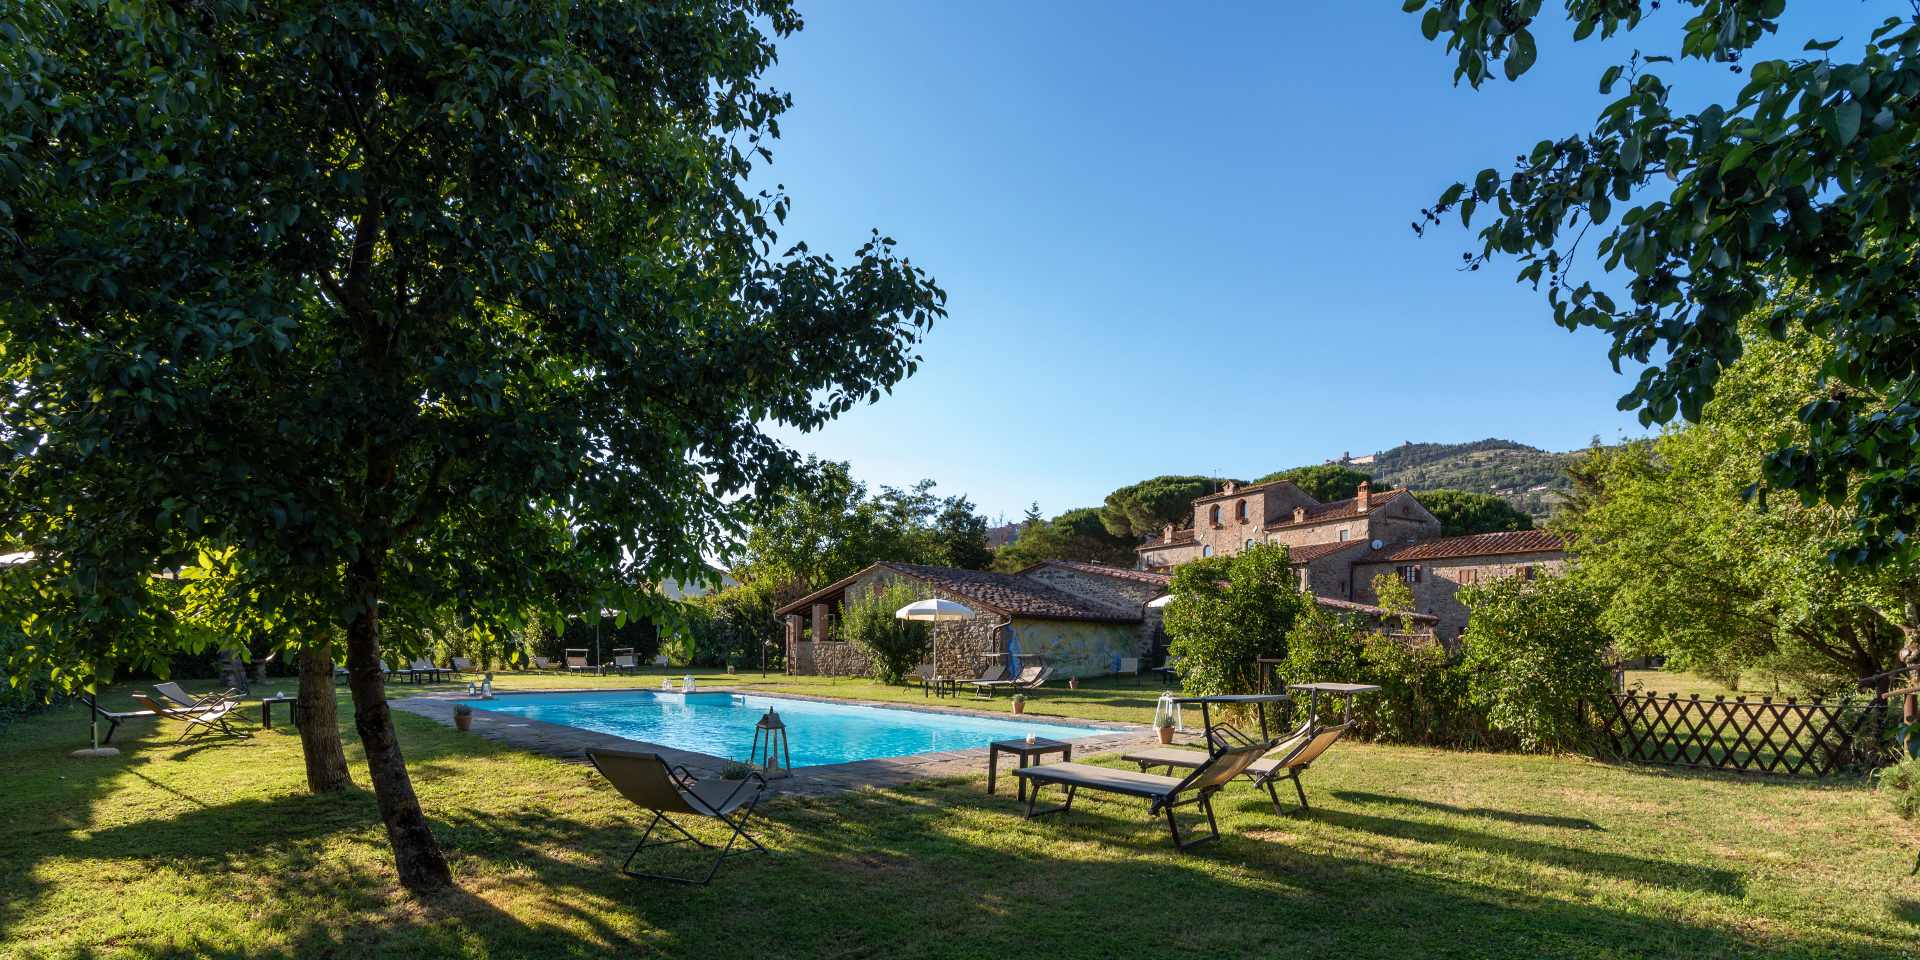 Foto del parco con piscina nell’antico Monastero
					San Silvestro